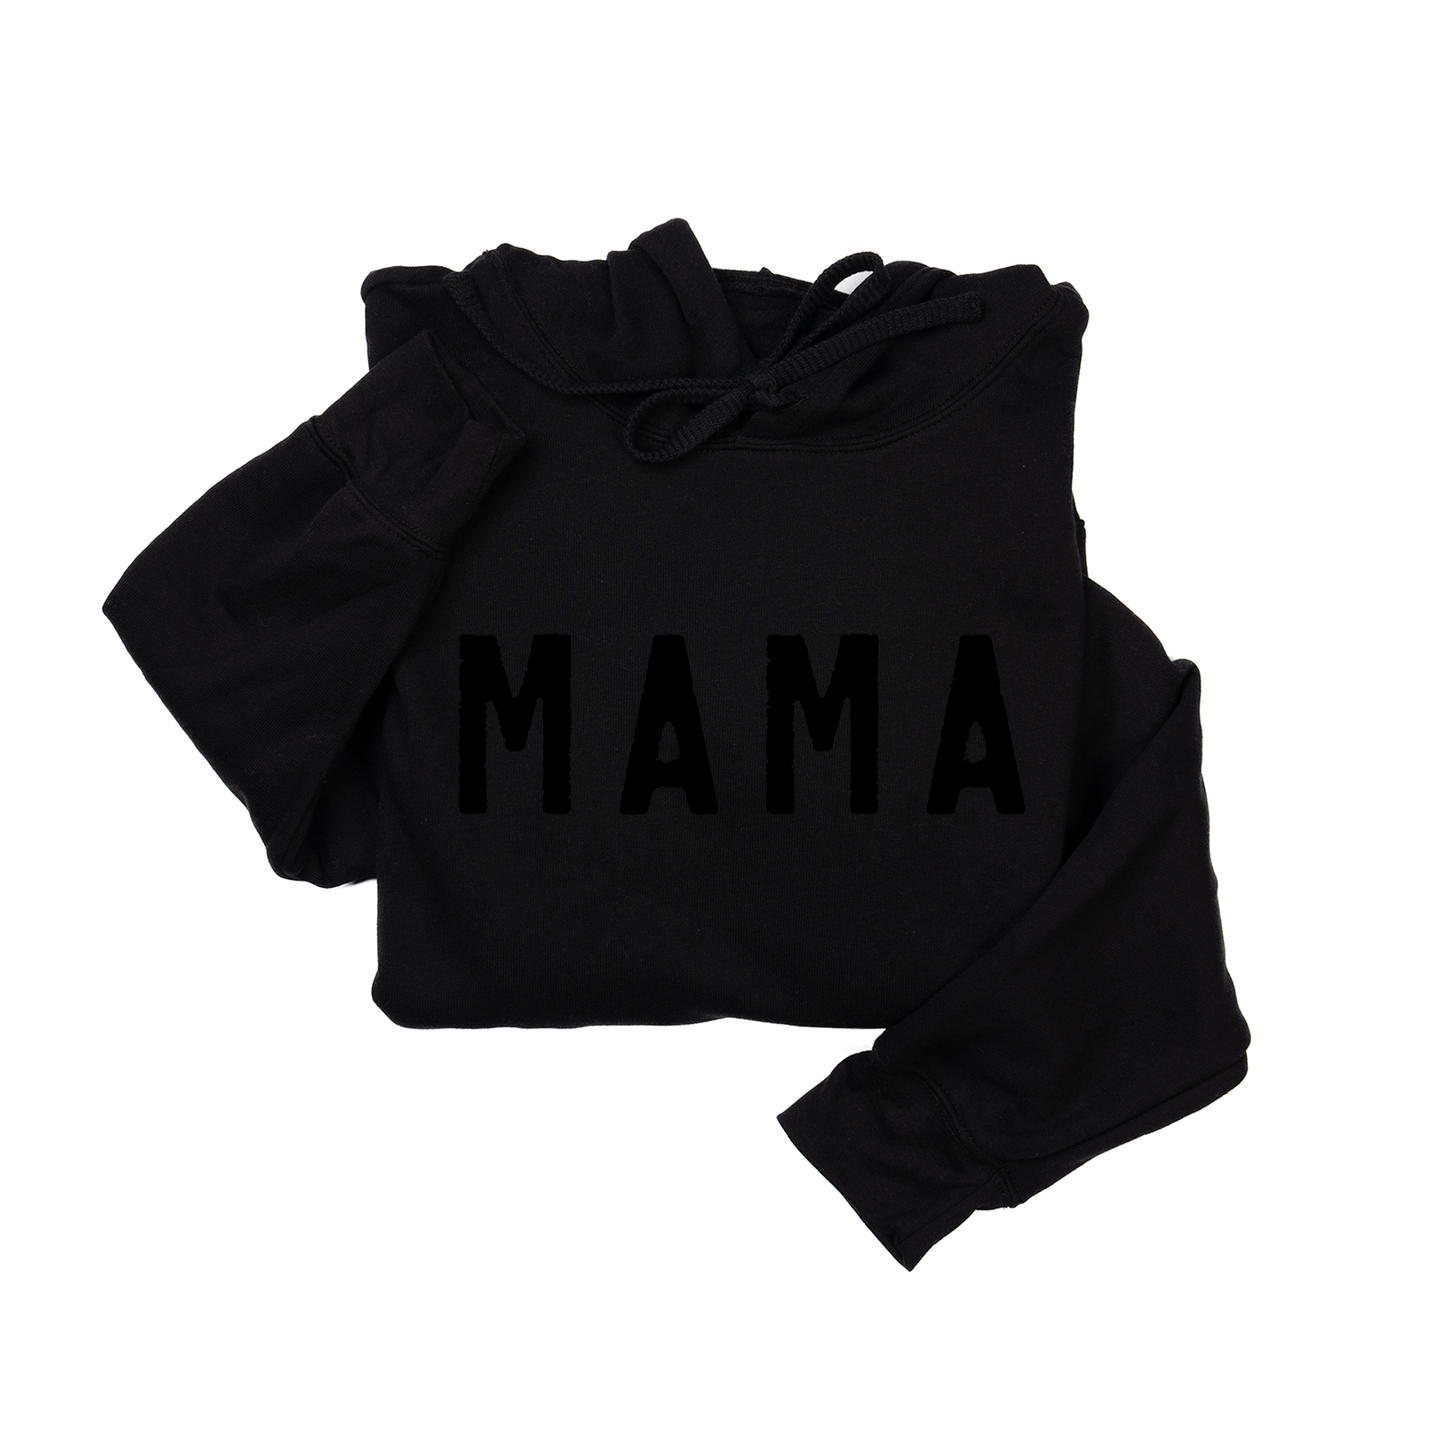 Mama (Rough, Black) - Hoodie (Black)